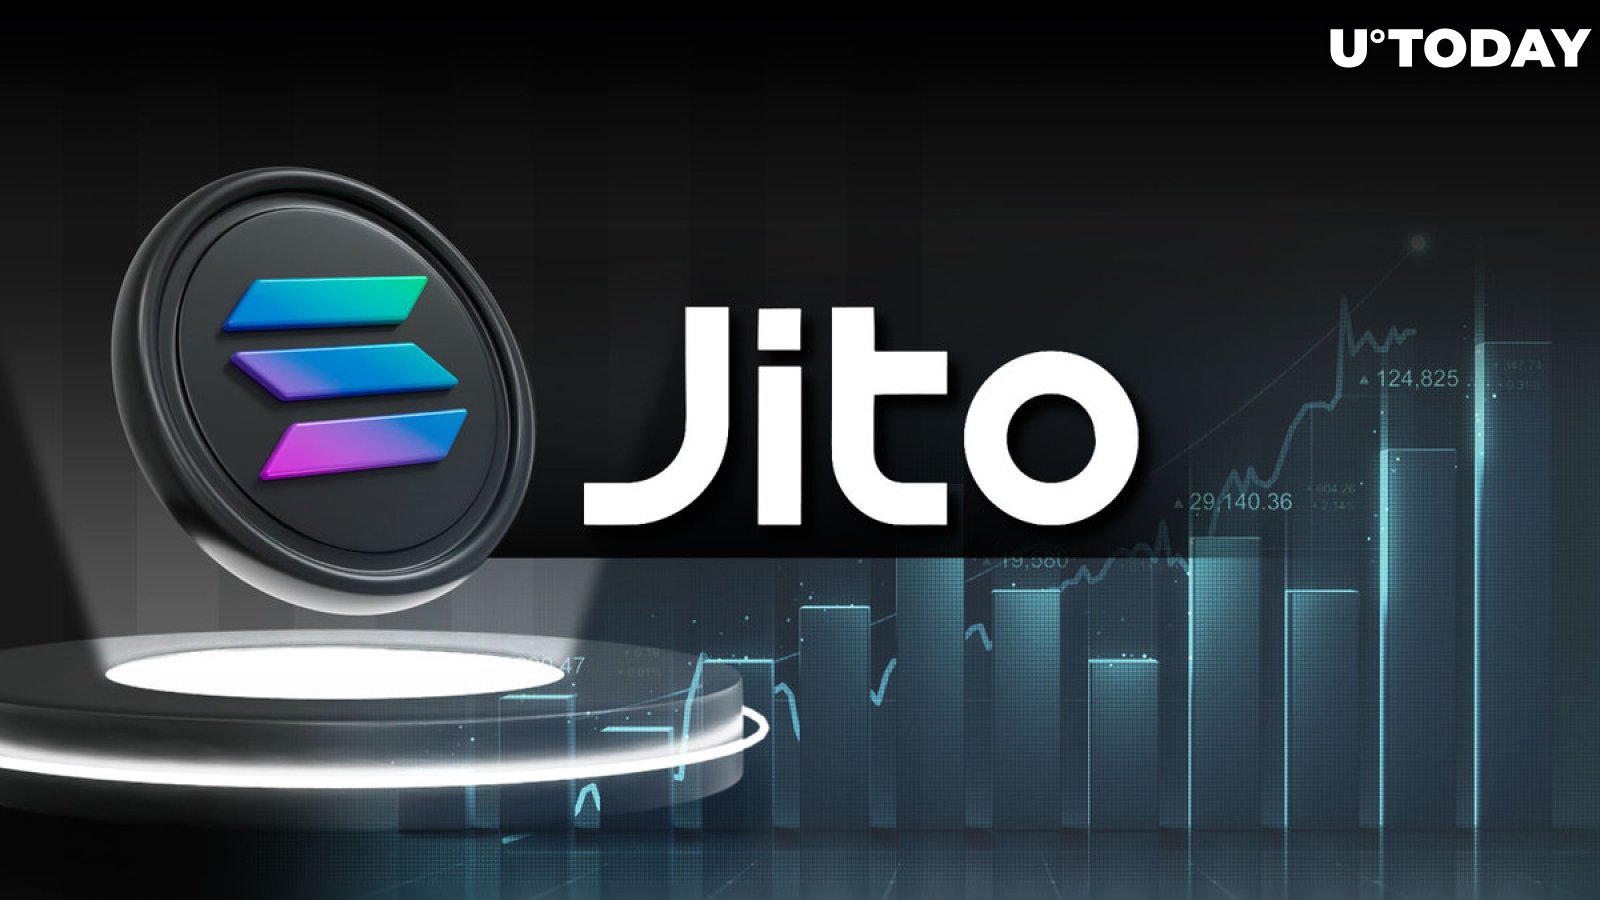 Solana's JITO Shockingly Jumped 88% Amid Mega Airdrop